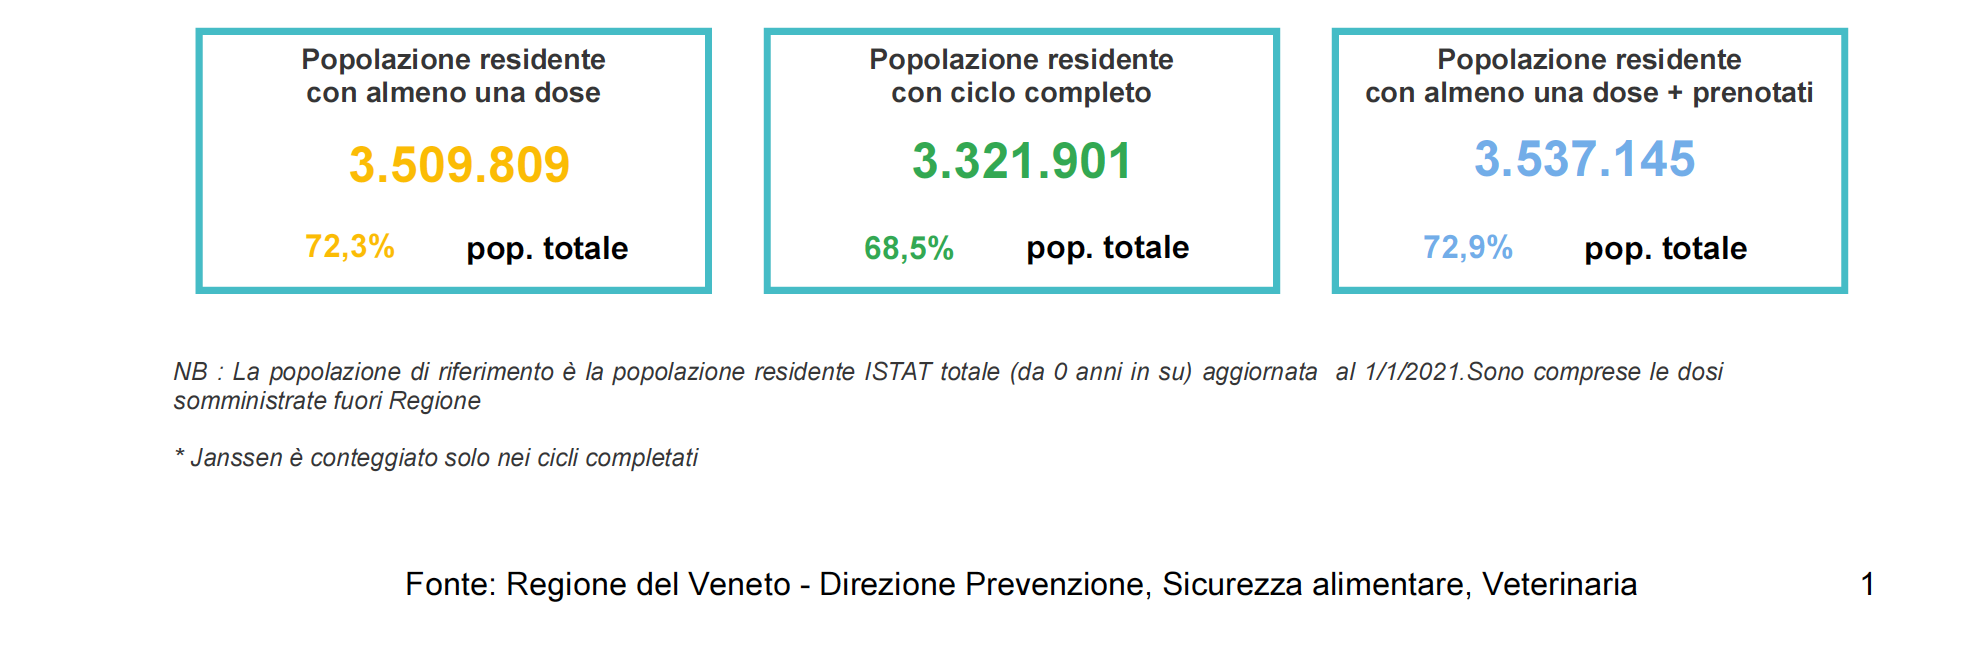 percentuale vaccinazioni Veneto 20 settembre